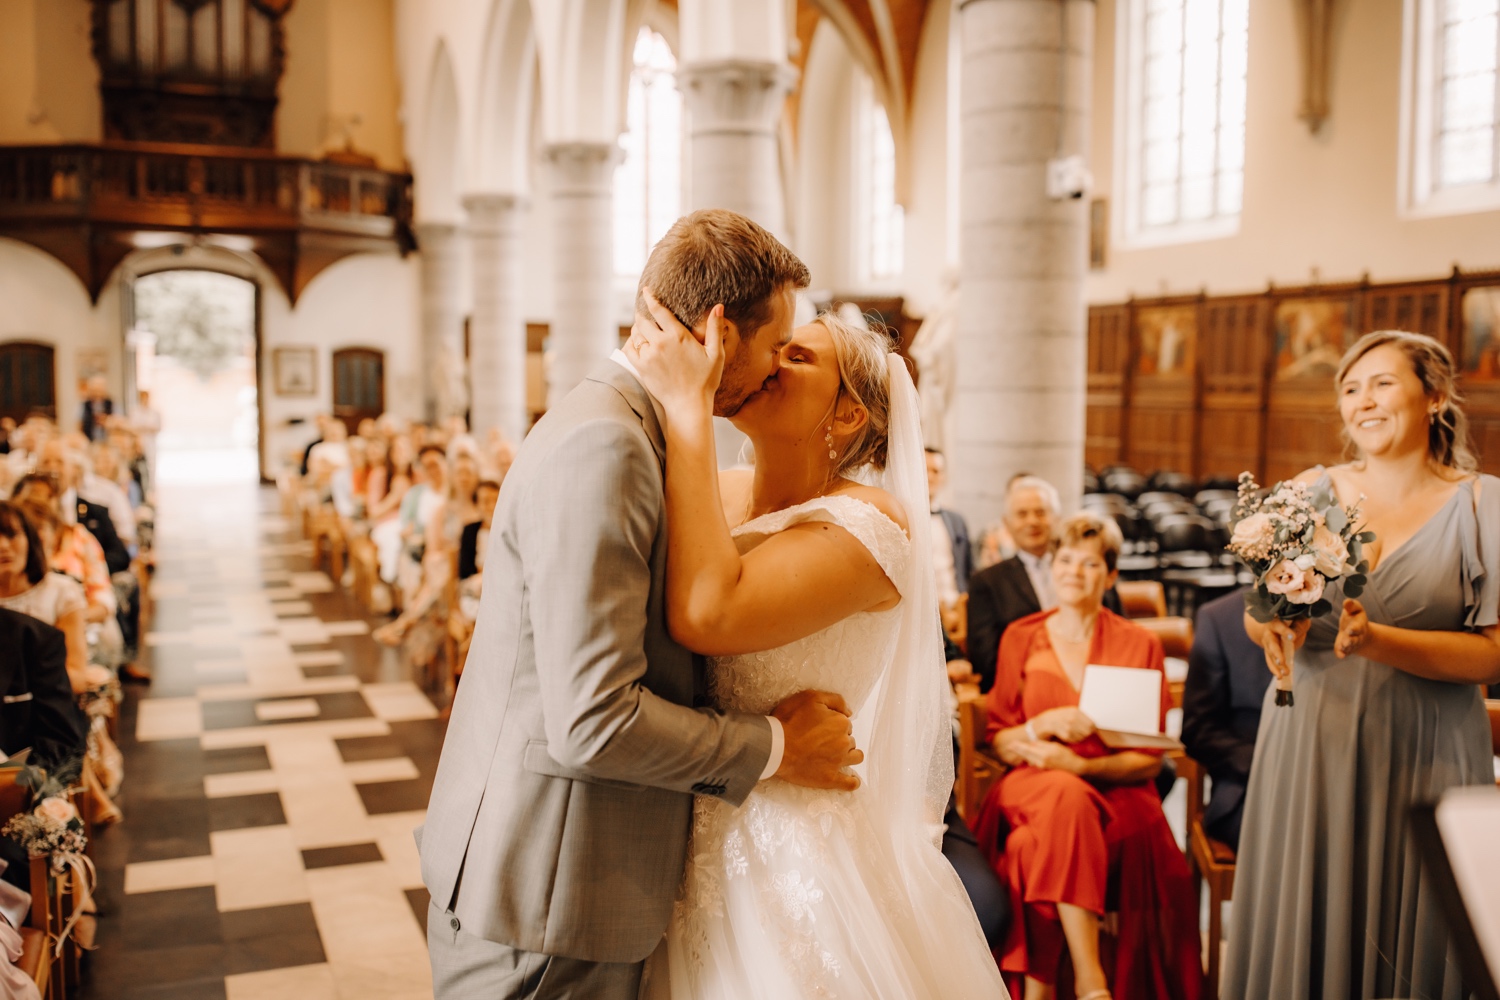 Huwelijksfotograaf Limburg - bruidspaar geeft elkaar een kus